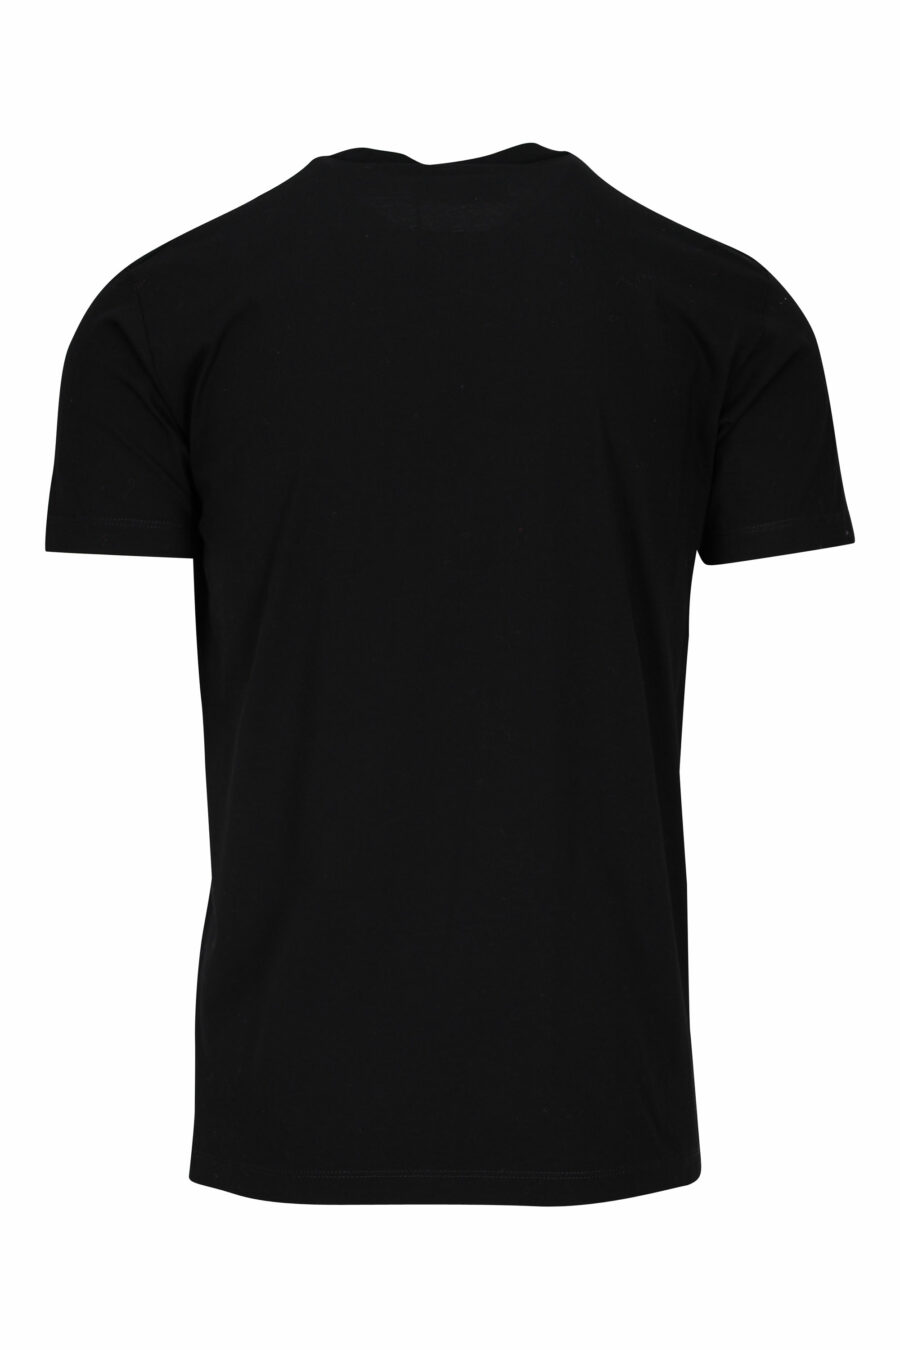 Camiseta negra con logo plateado y estampado de monedero - 8052134940457 1